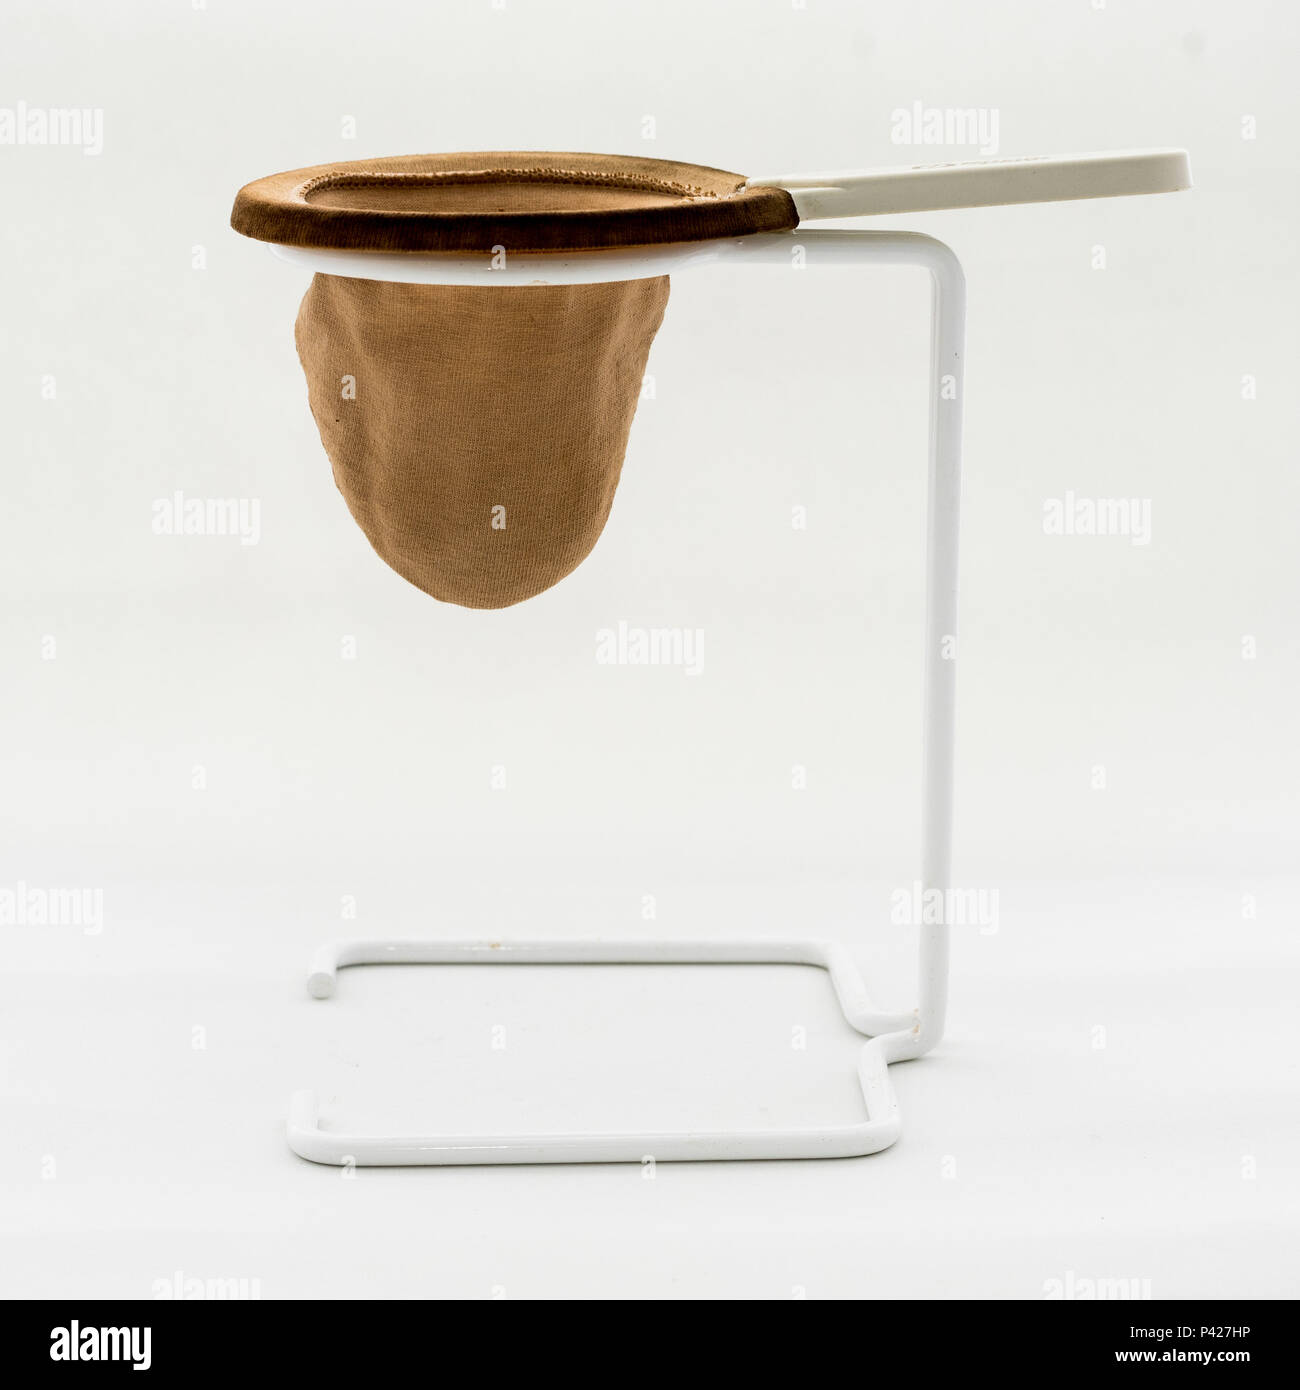 Coador de café de pano. Stock Photo